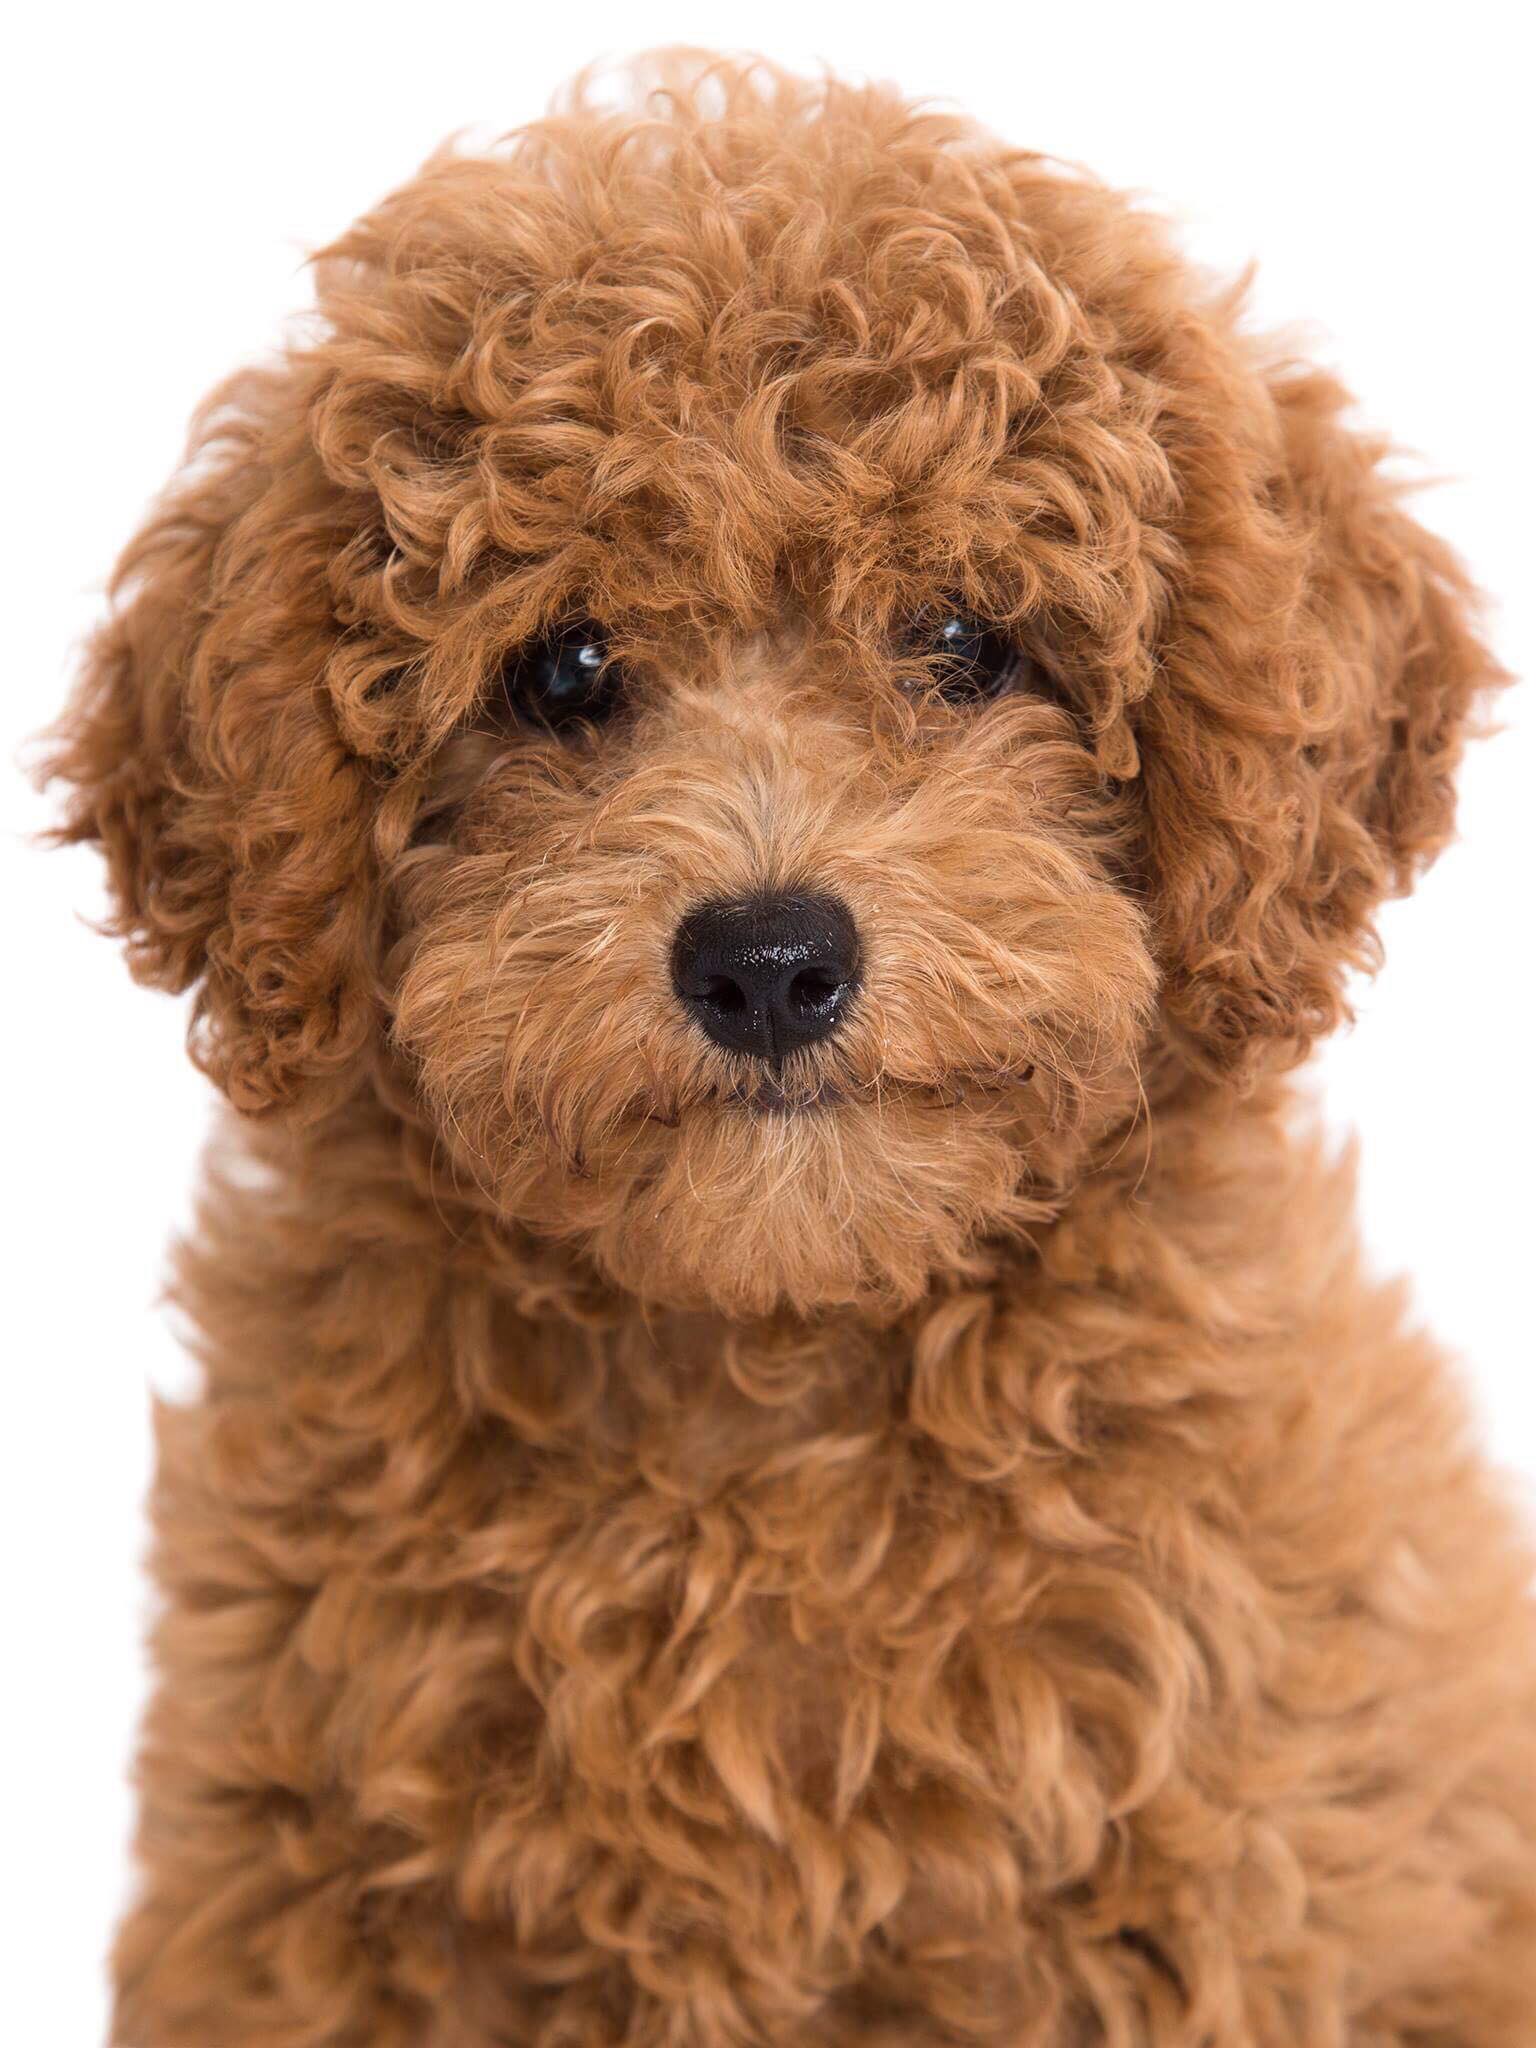 Bạn muốn chụp những bức ảnh đáng yêu với chú chó Poodle của mình? Hãy xem ngay các kiểu chụp ảnh chó Poodle độc đáo trên trang web của chúng tôi.